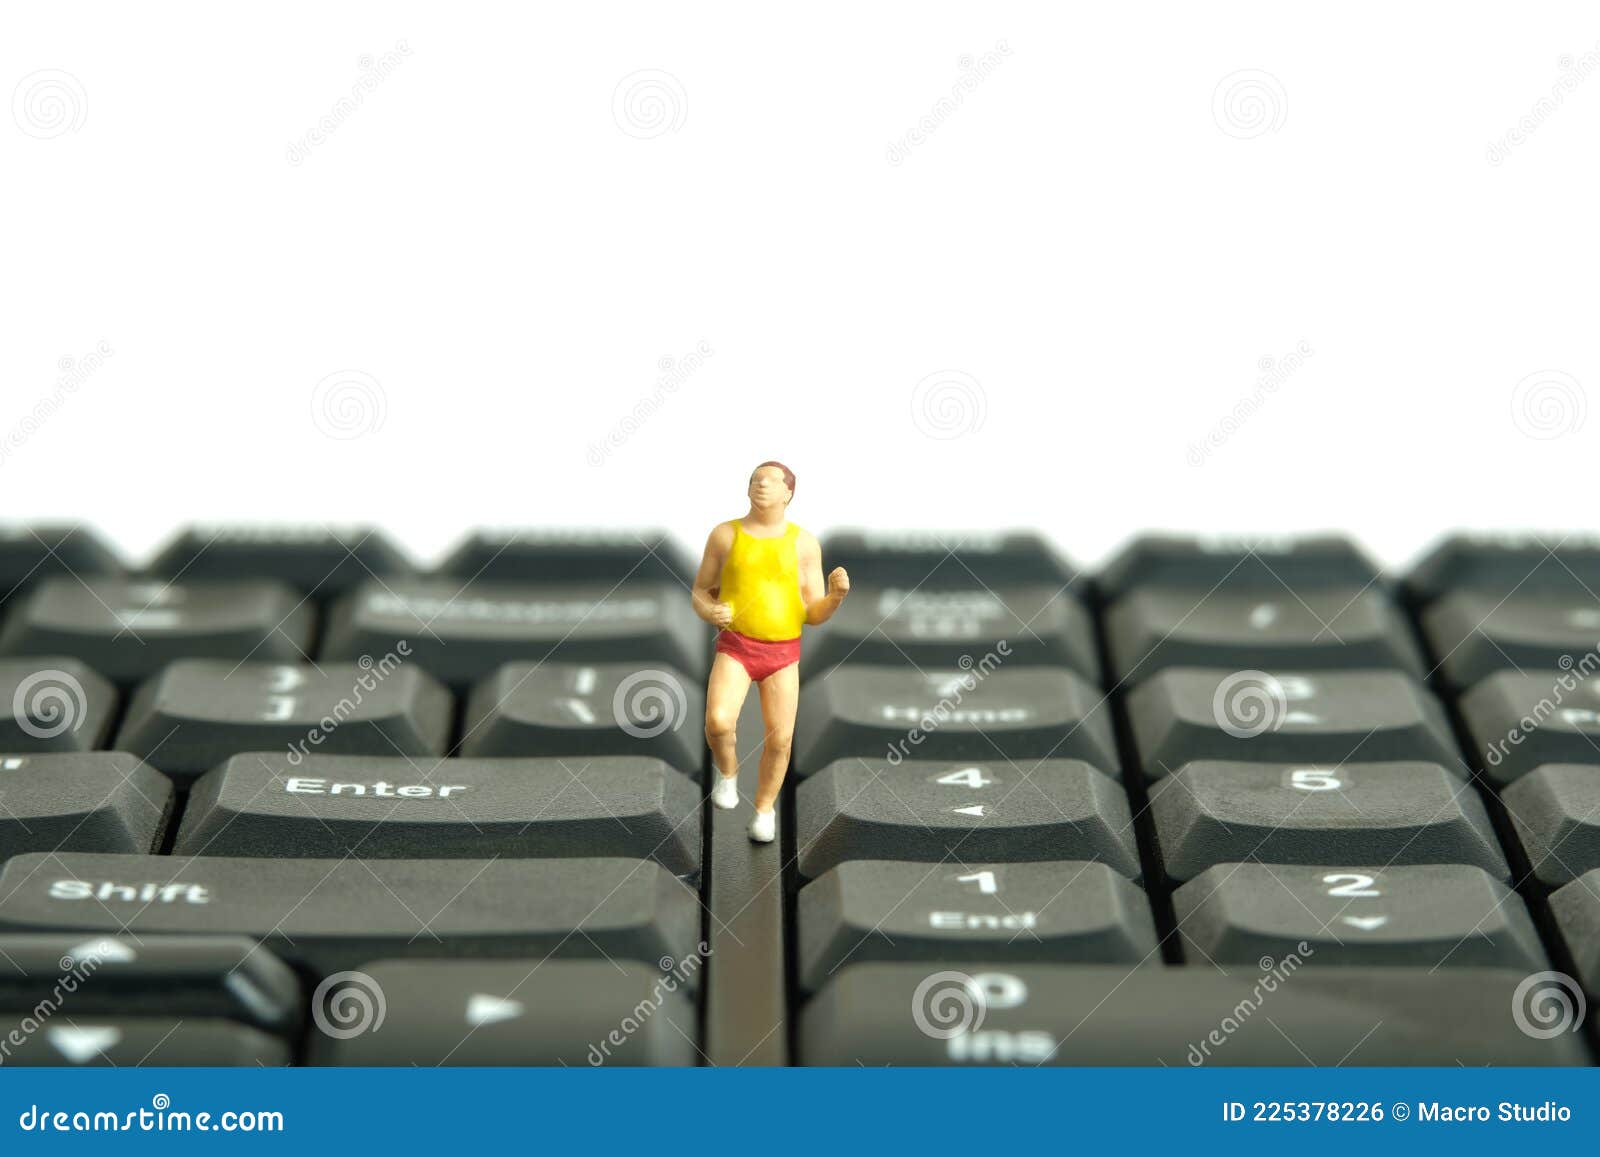 Immagini Stock - Tastiera Di Pulizia Della Donna In Miniatura